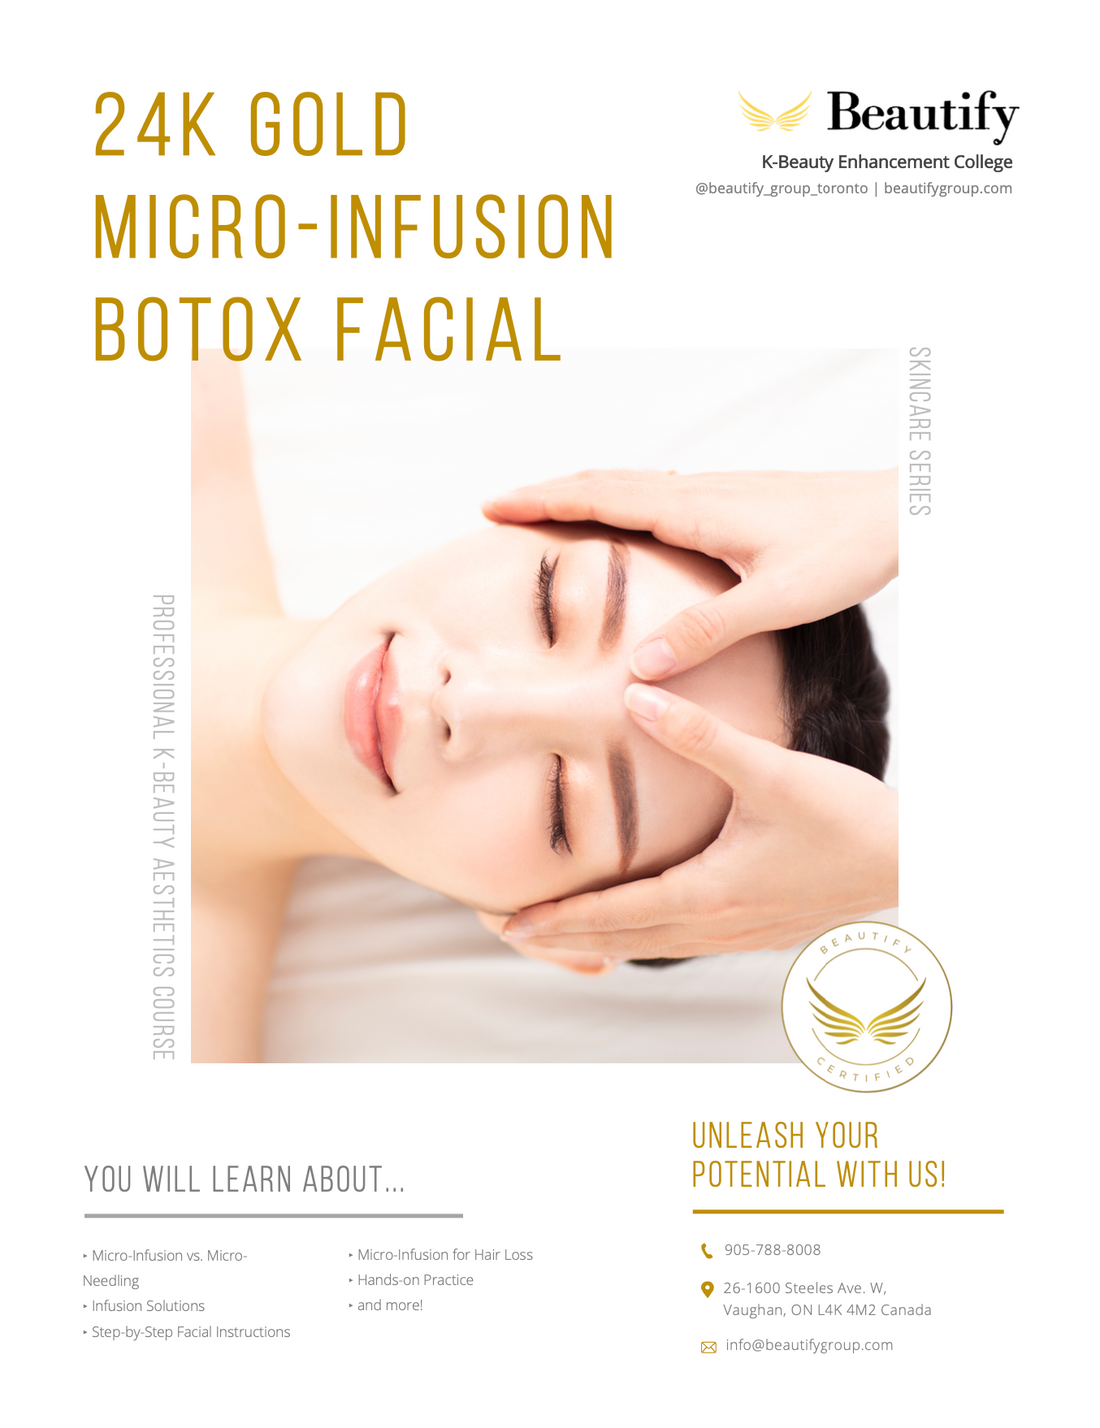 24K Gold Micro-Infusion Botox Facial Course